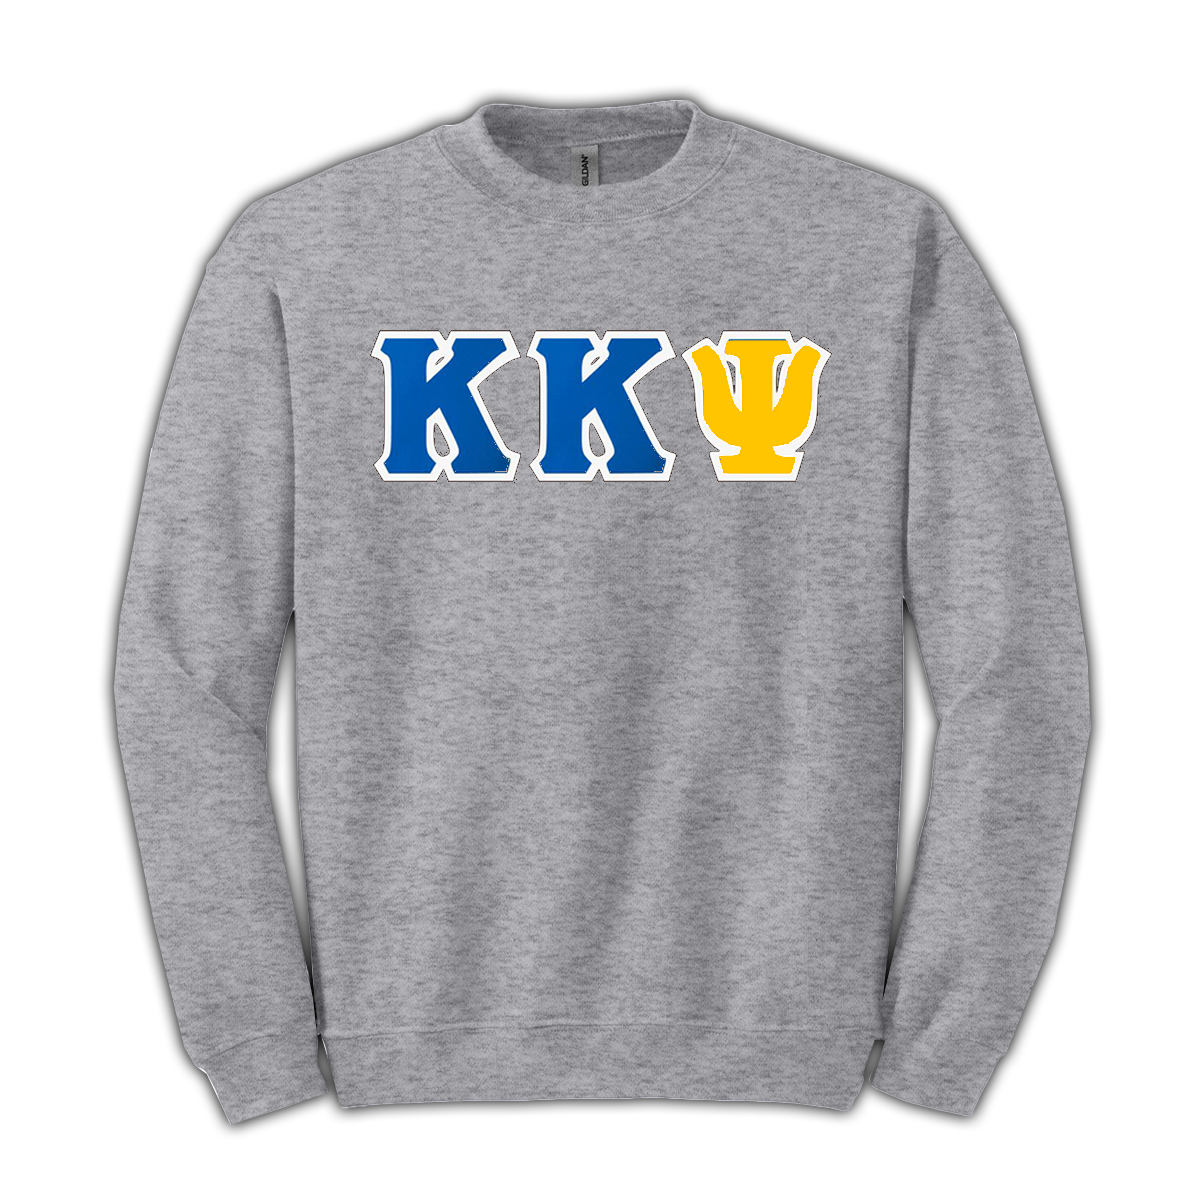 Kappa Kappa Psi Standards Crewneck Sweatshirt - G180 - TWILL